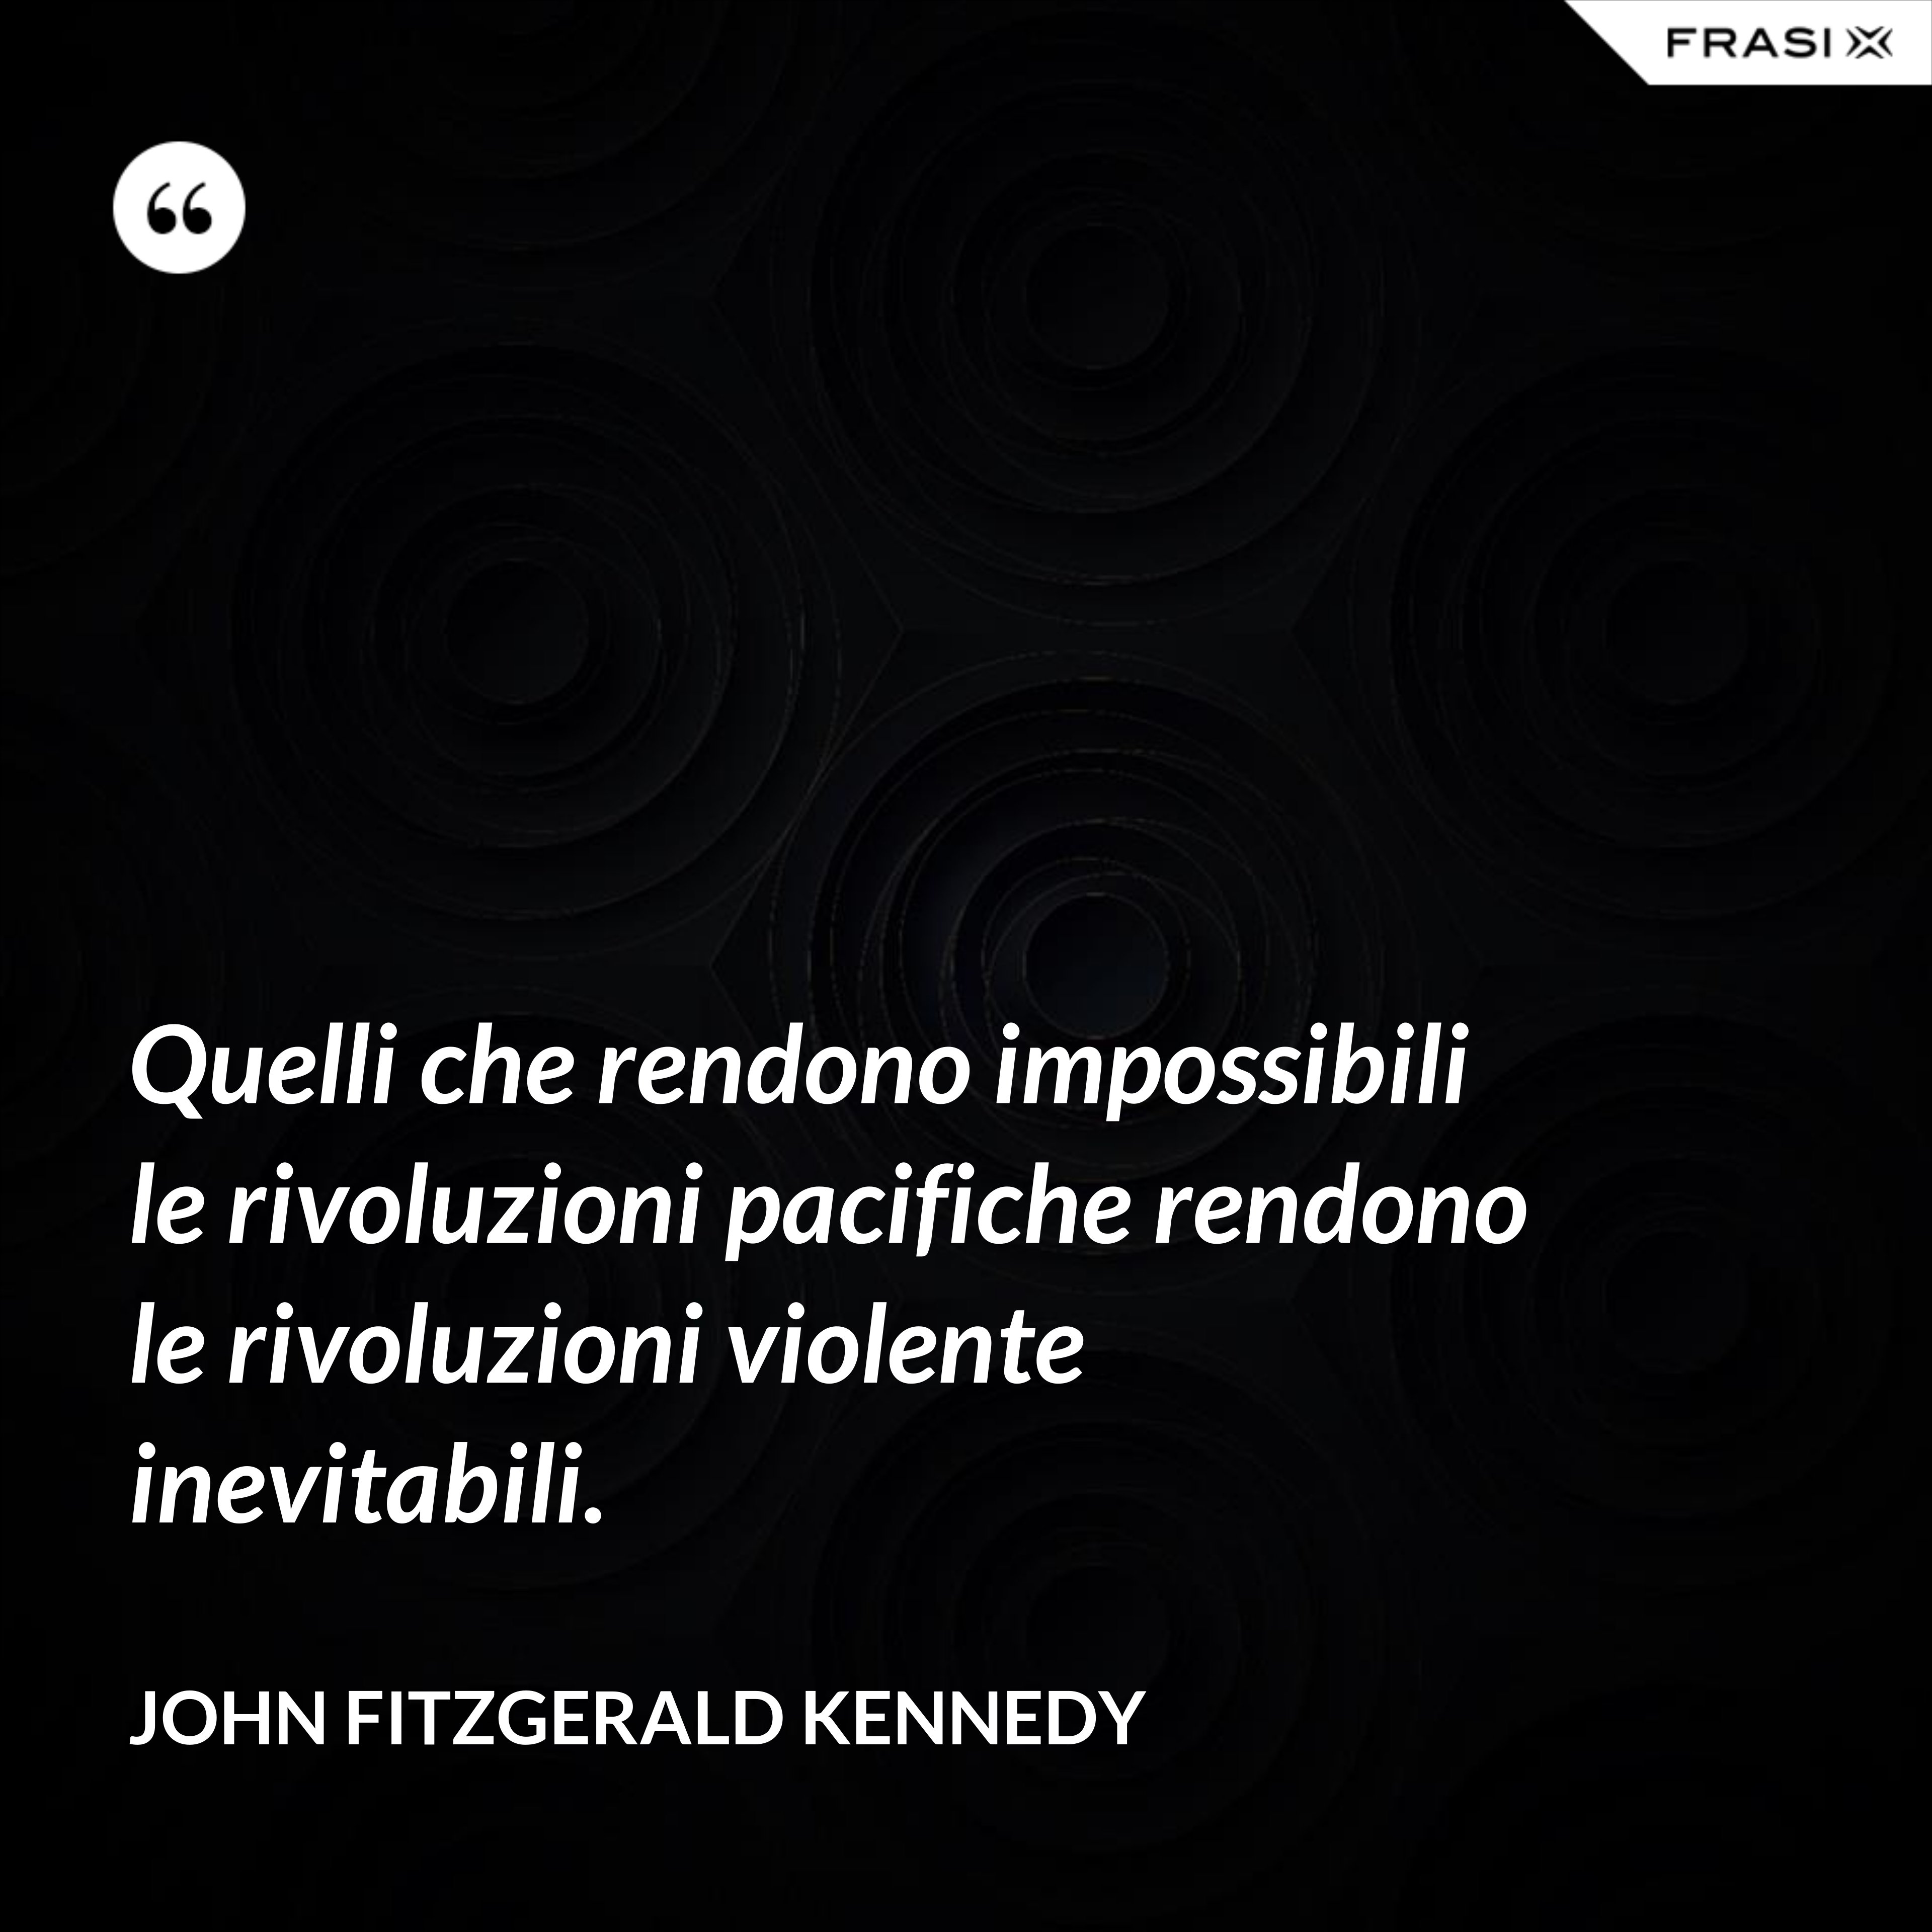 Quelli che rendono impossibili le rivoluzioni pacifiche rendono le rivoluzioni violente inevitabili. - John Fitzgerald Kennedy